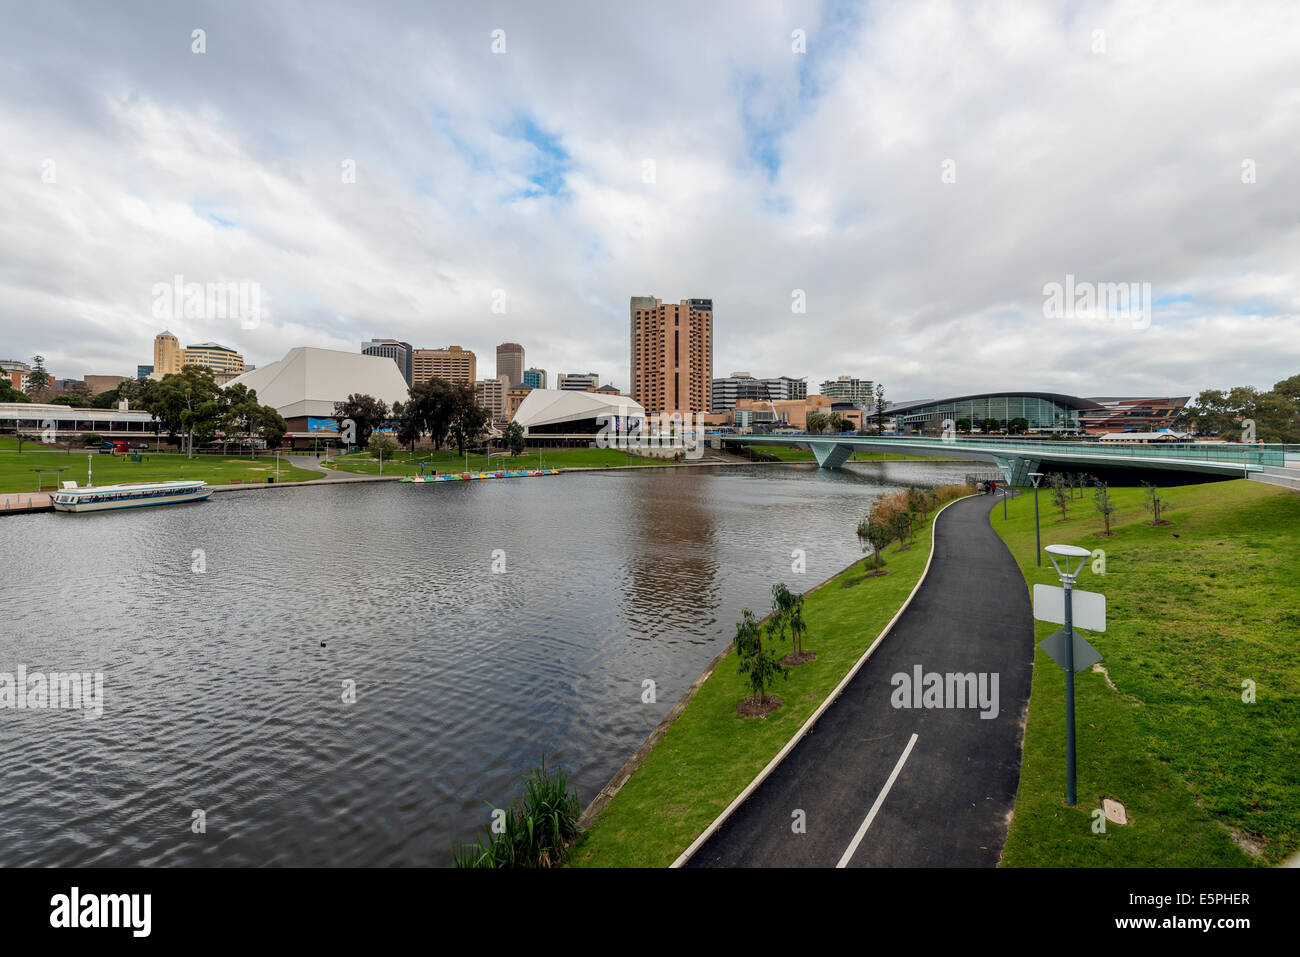 Die neue Ufer Fußgängerbrücke überspannt die malerischen River Torrens in der Innenstadt von Adelaide, South Australia. Stockfoto